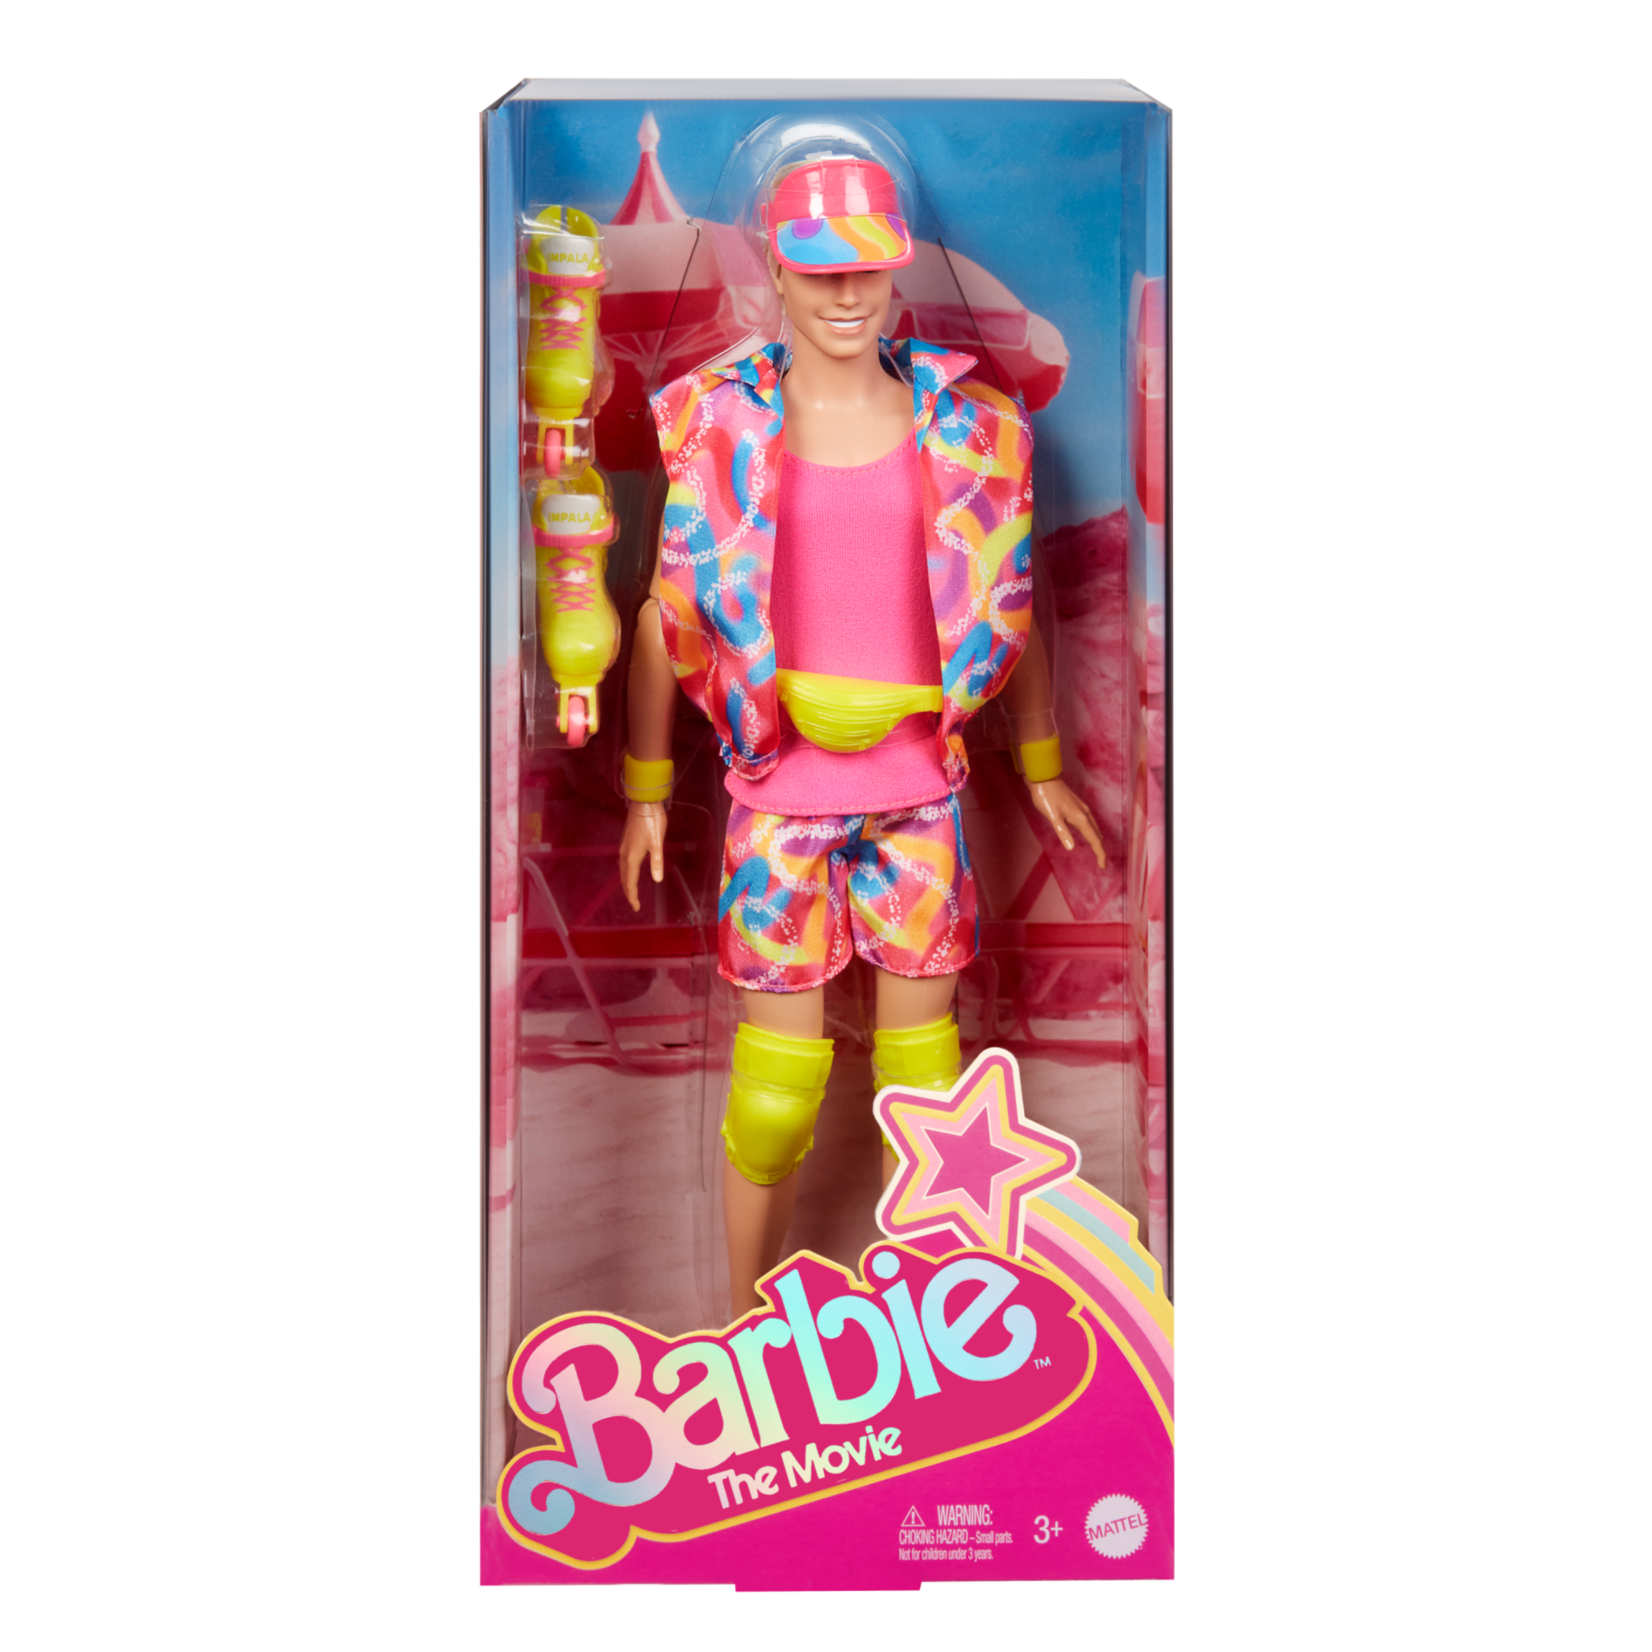 Mattel Mattel Barbie the Movie Signature Doll Ken Inline Skating